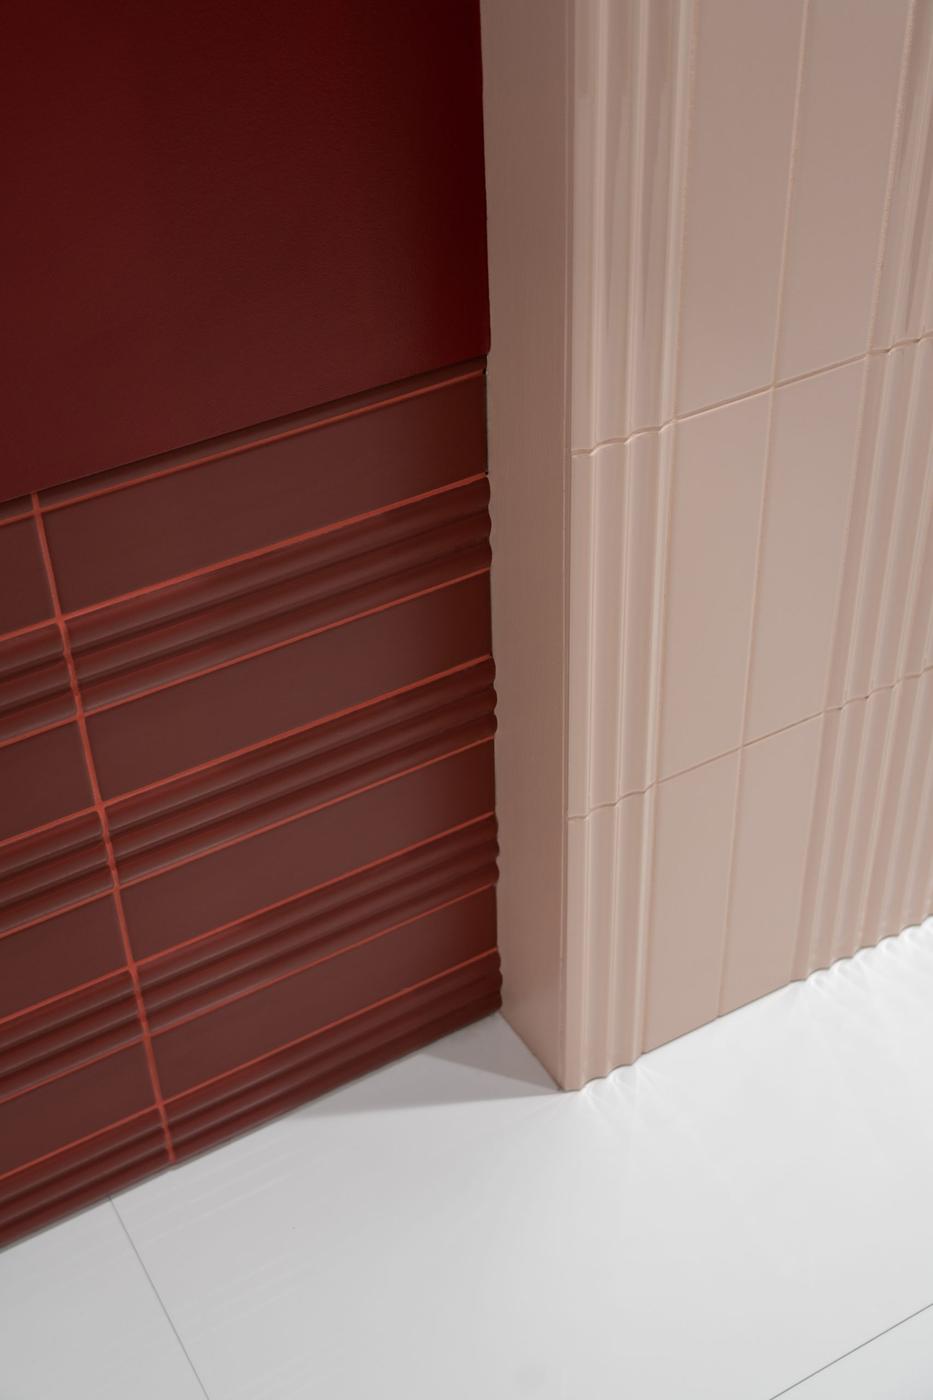 Carrelage uni rouge avec textures sur mur juxtaposé à des carreaux beige dans une ambiance de salle épurée aux tons doux